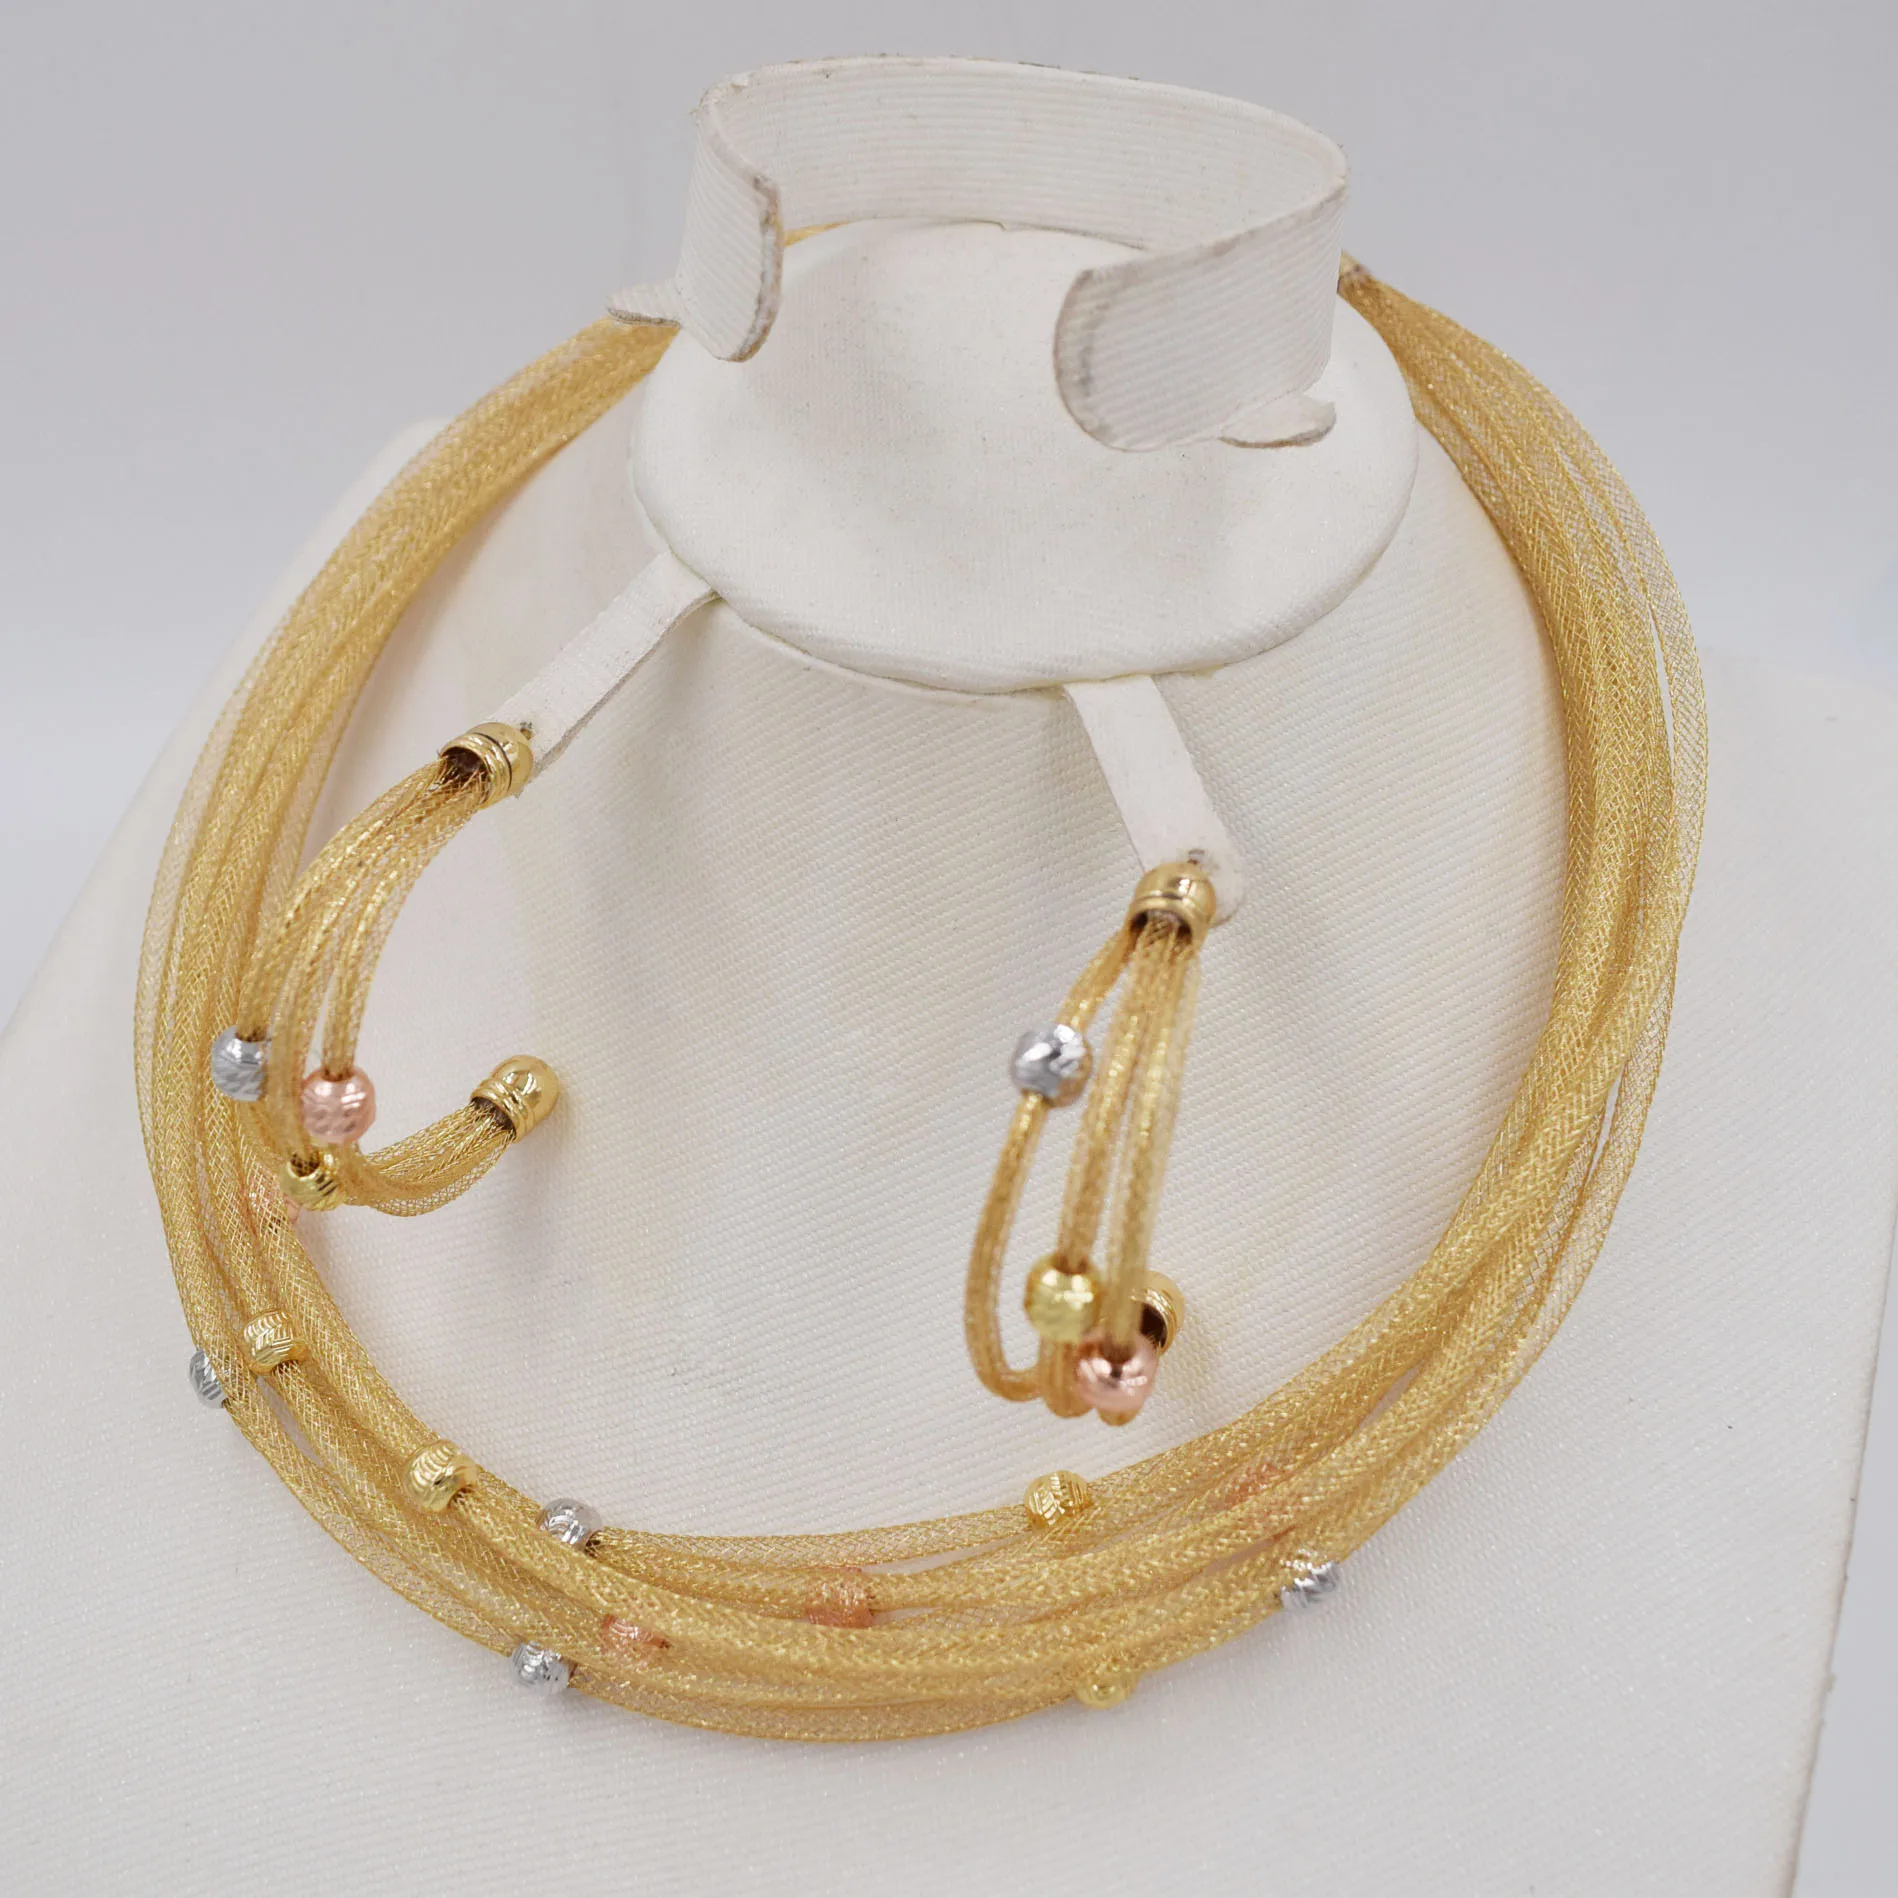 Nuevo Oro Rosa / Oro Color de la Gota de los Pendientes del Collar de la Conjunto por Parte de las Mujeres de Plata de la Bola del Color de la Joyería Conjuntos de 2020 0